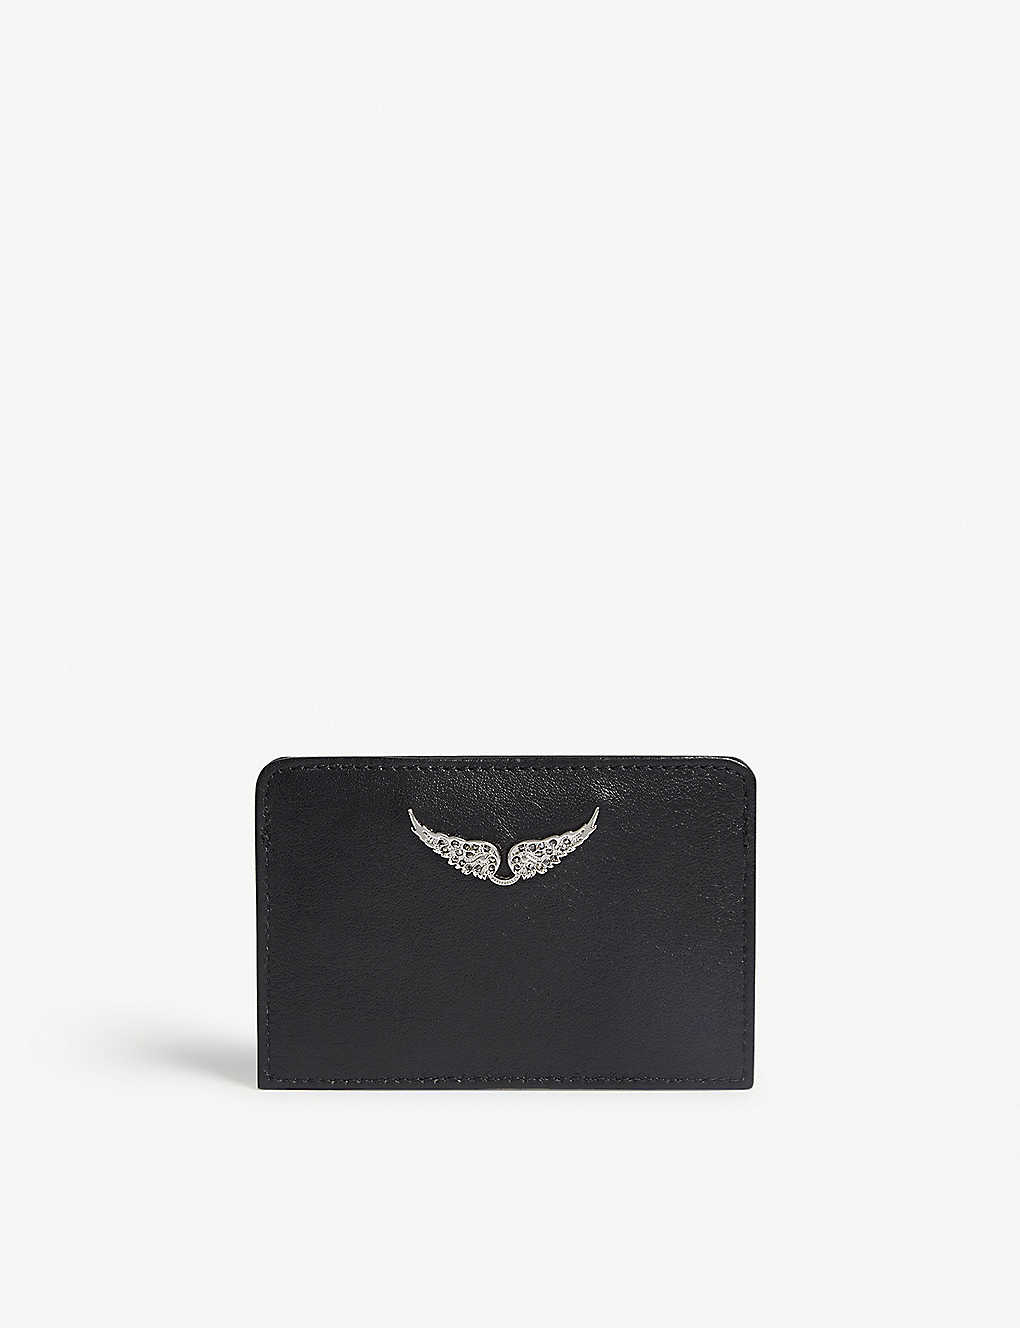 ZADIG&VOLTAIRE - Leather card holder | Selfridges.com